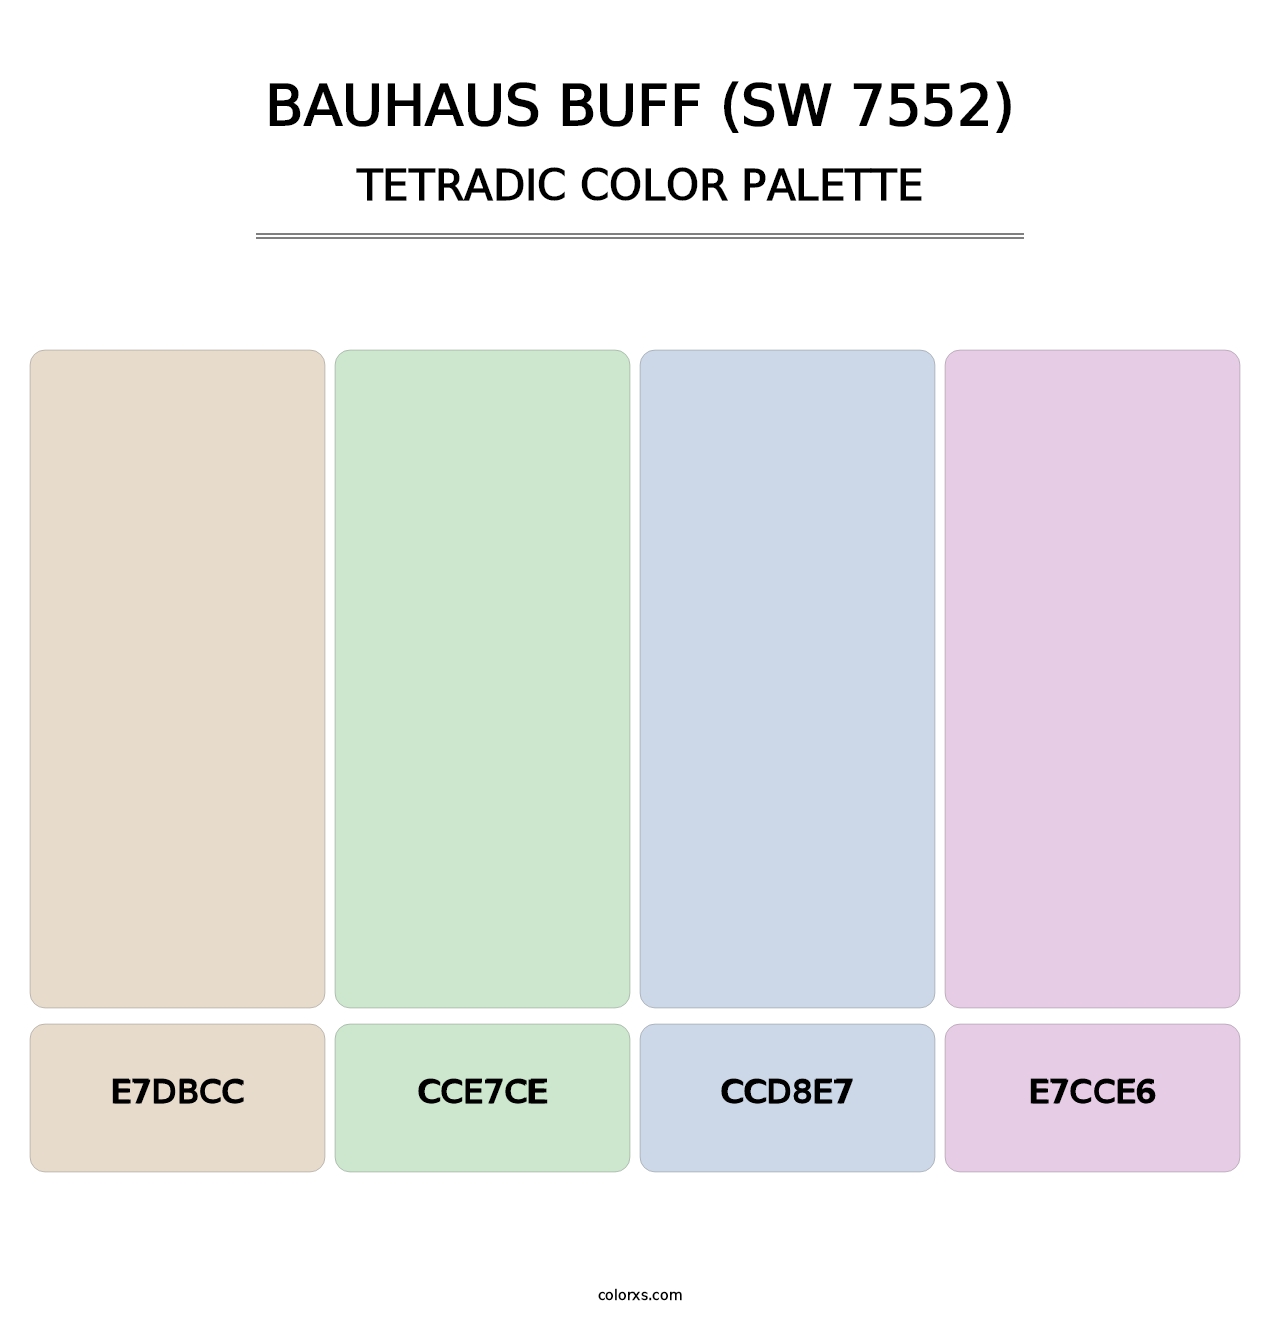 Bauhaus Buff (SW 7552) - Tetradic Color Palette